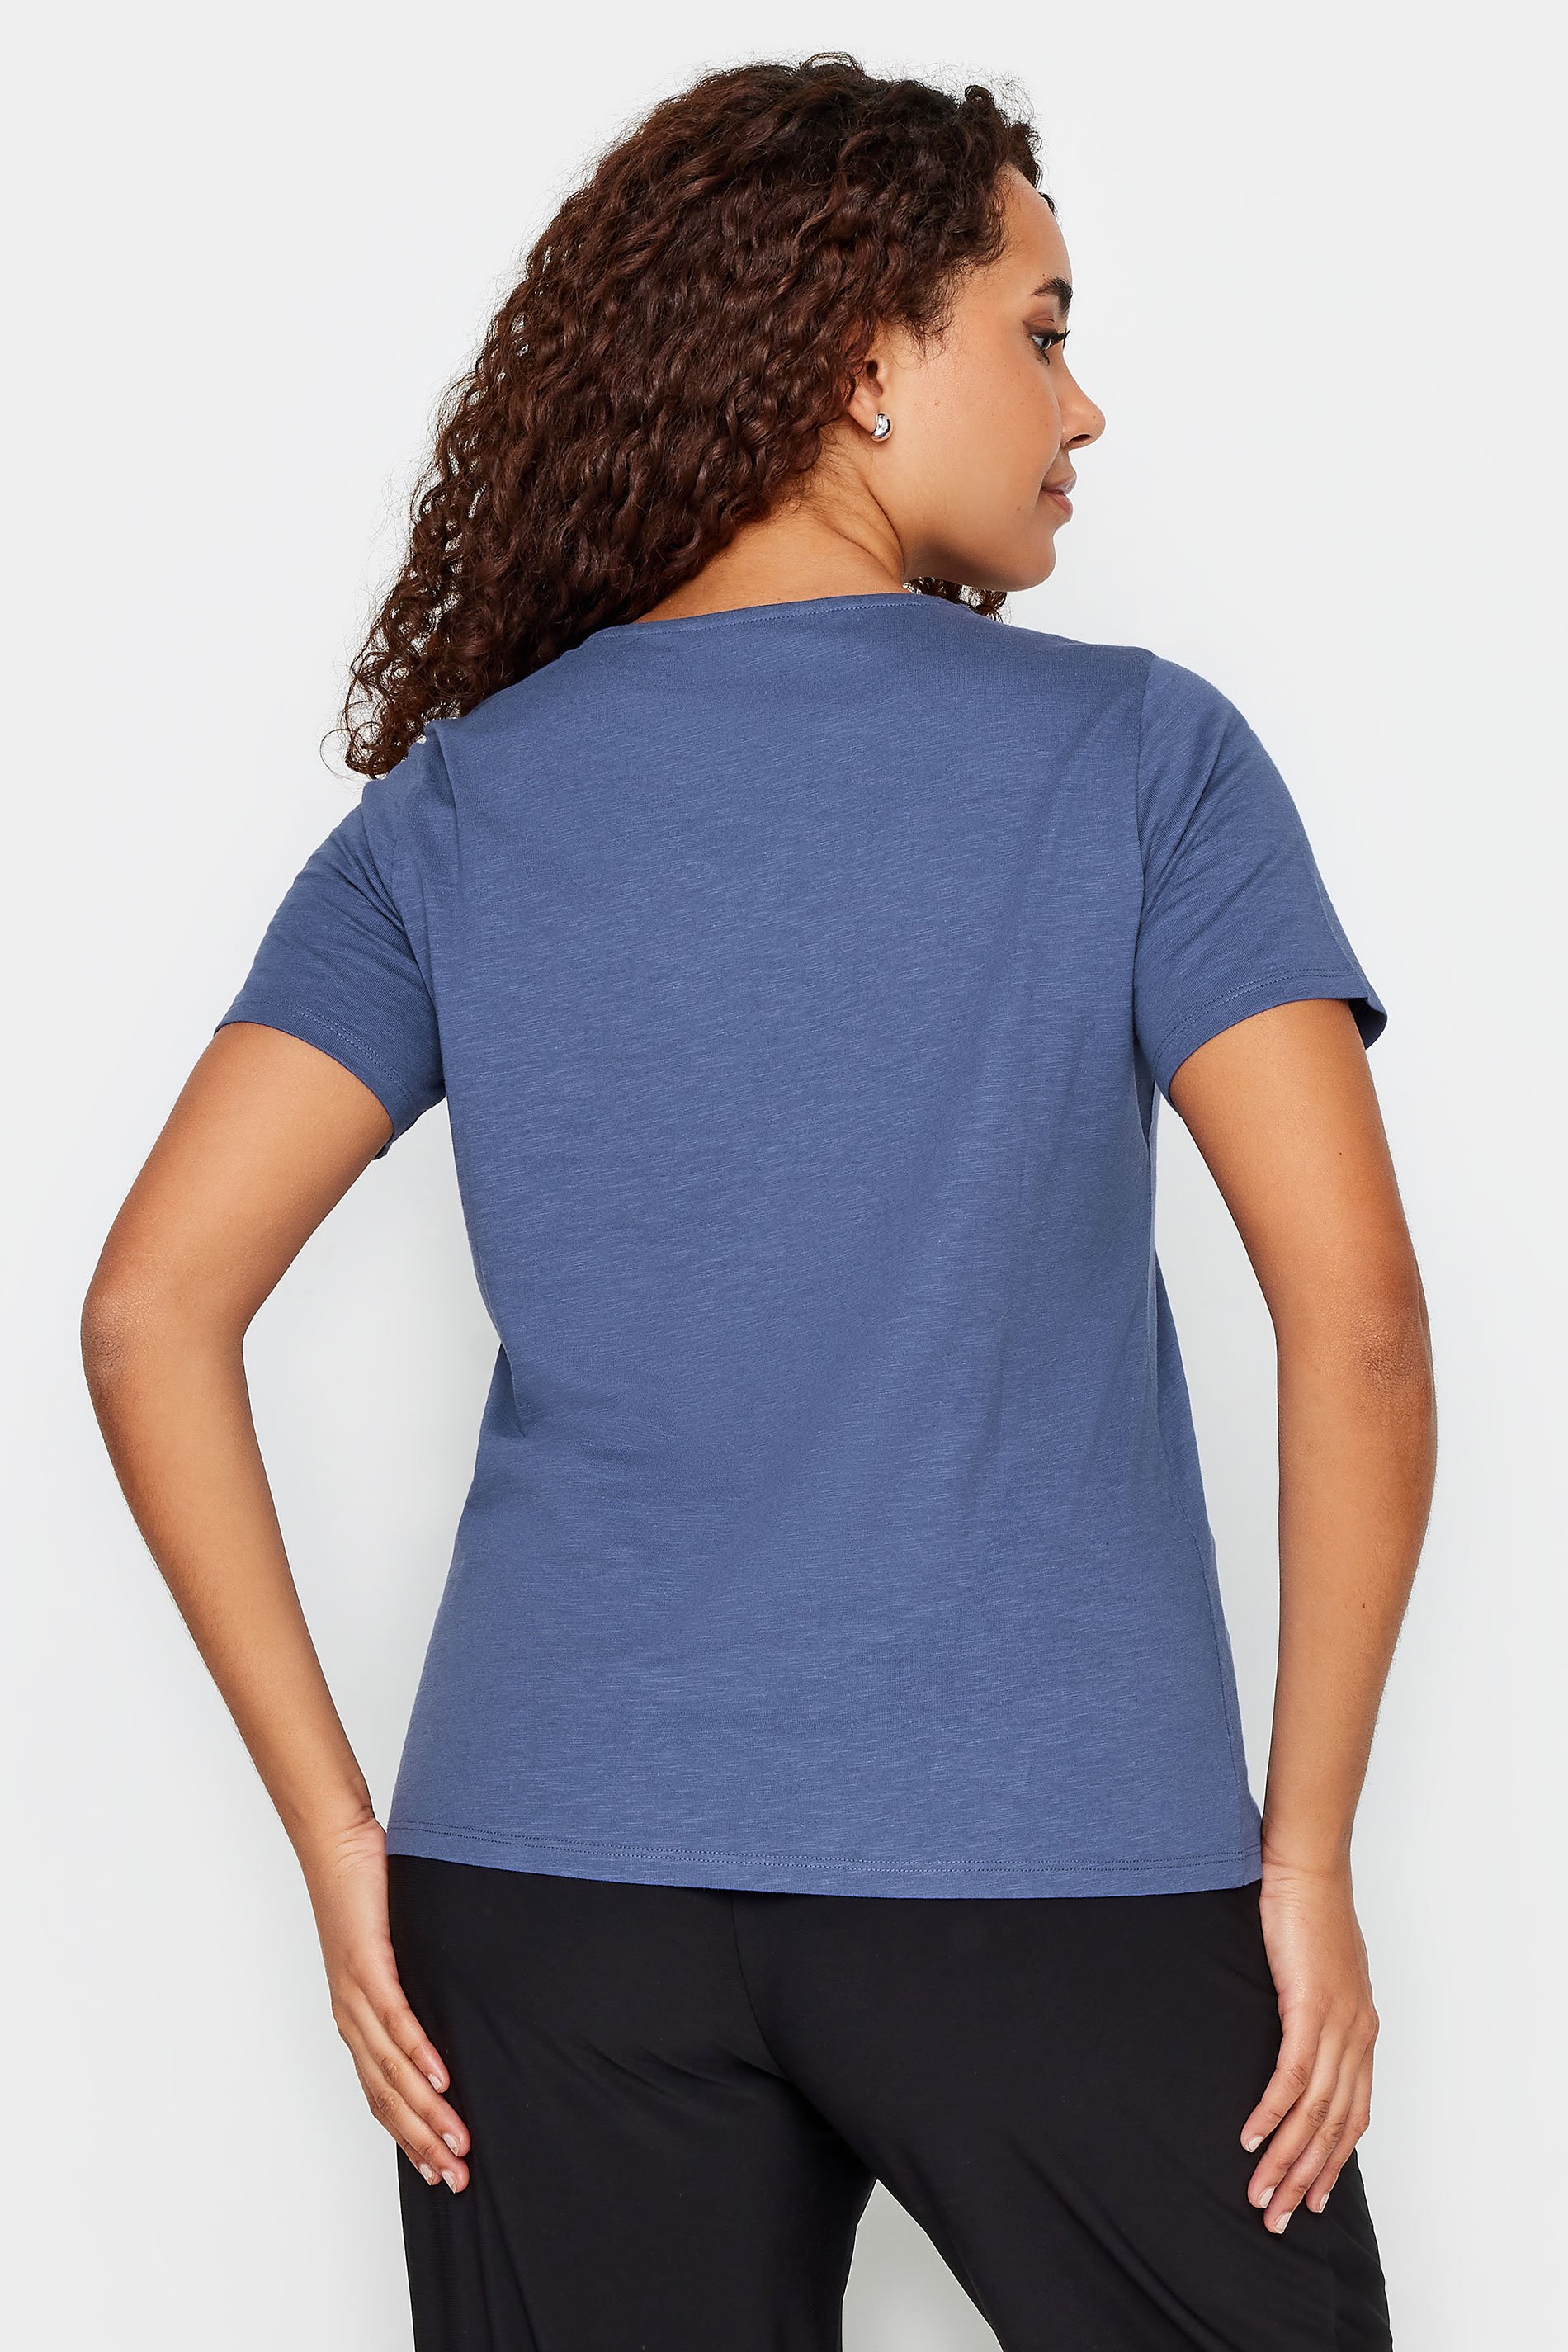 M&Co Blue Notch Neck Cotton T-Shirt | M&Co 3